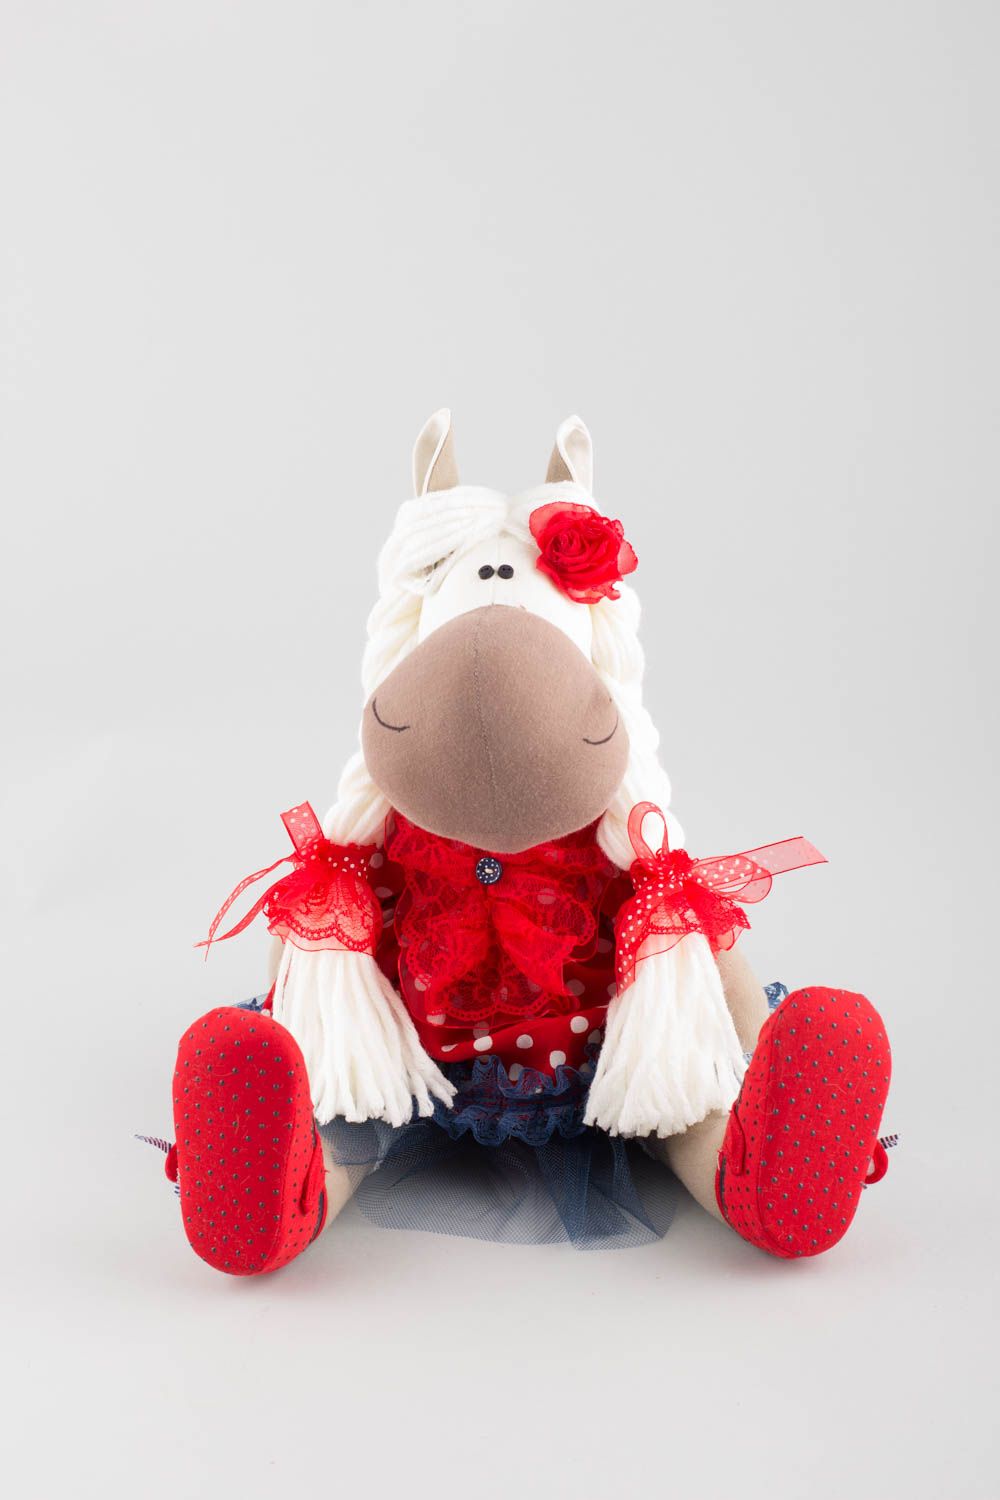 Мягкая игрушка лошадка красавица ручной работы тканевая оригинальная милая фото 3